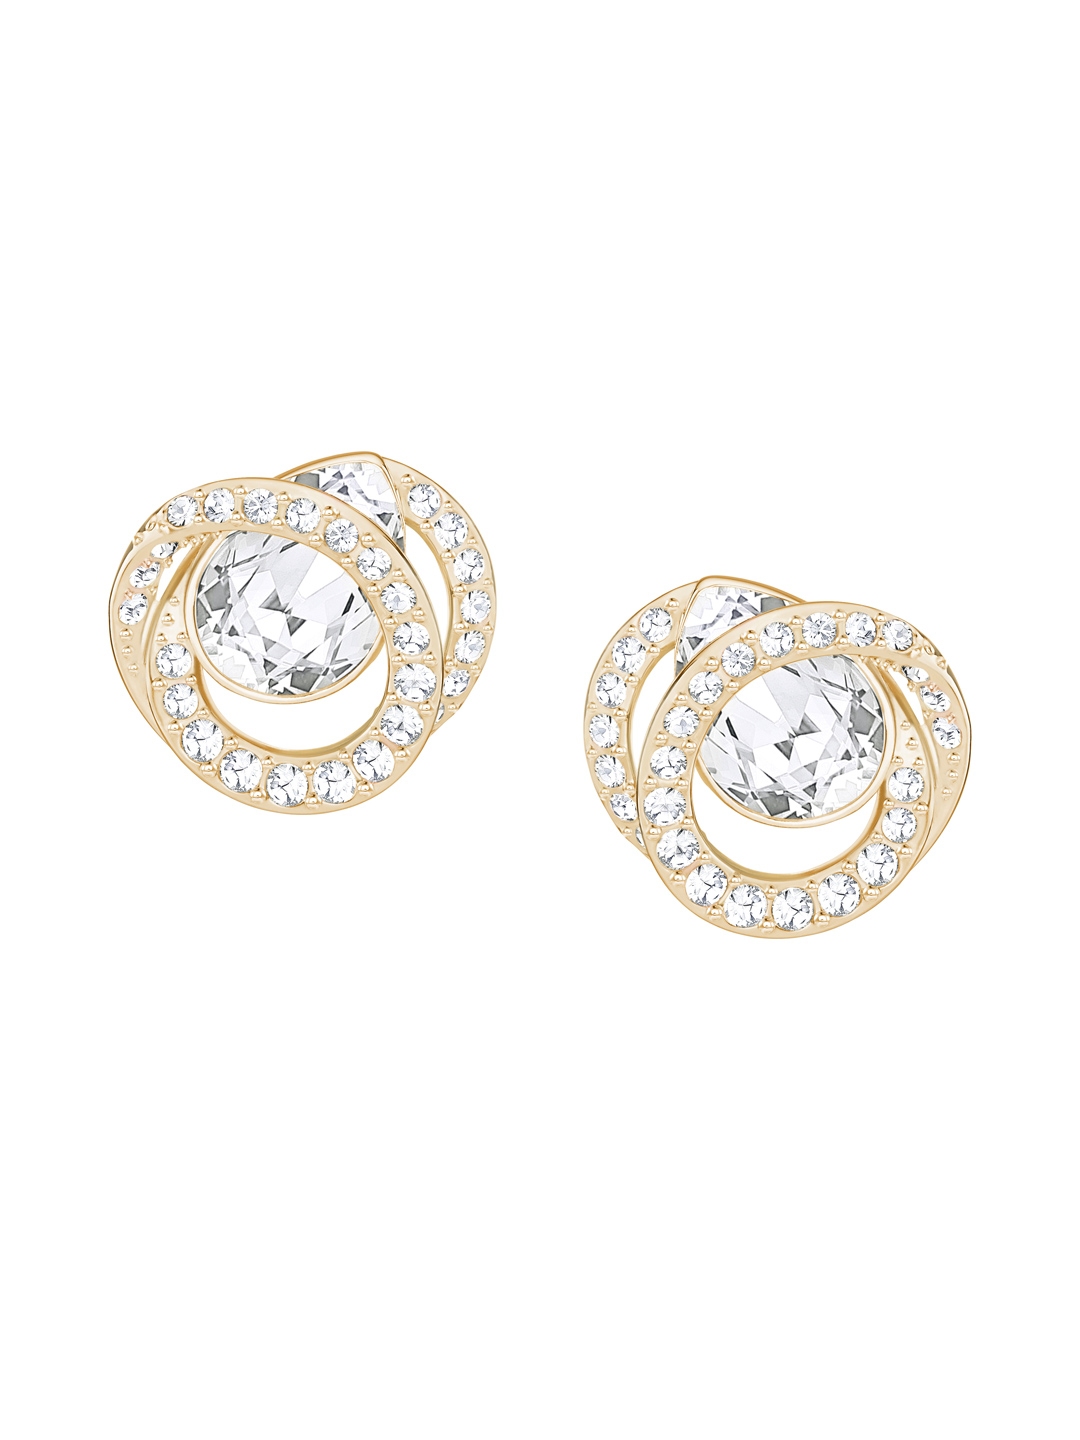 Buy SWAROVSKI Generation Pierced Earrings - Earrings for Women 1753860 ...